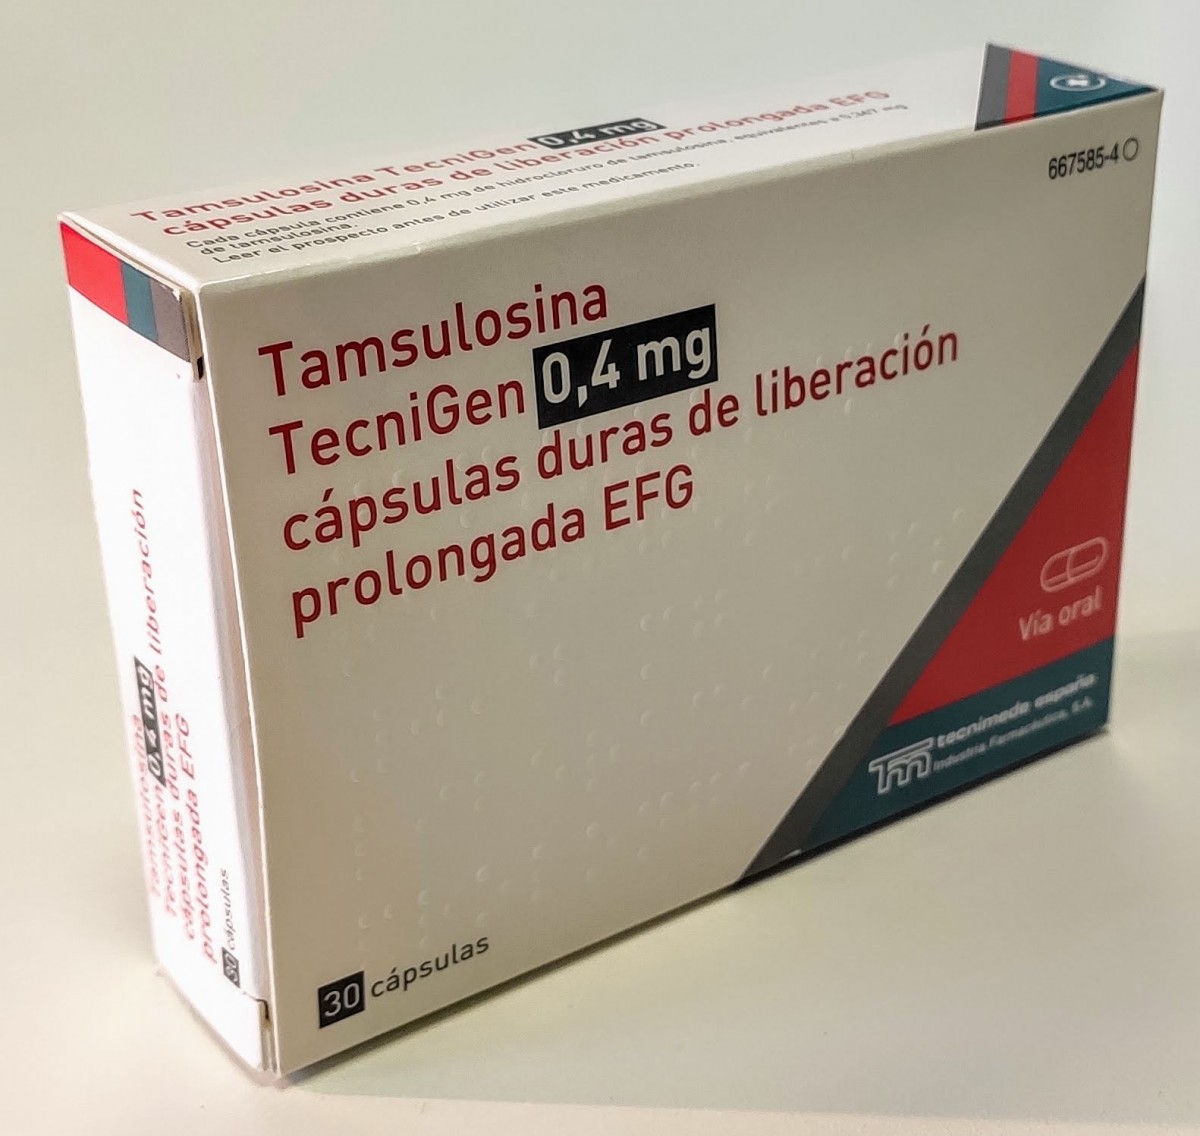 TAMSULOSINA TECNIGEN 0,4 mg CAPSULAS DE LIBERACION PROLONGADA EFG, 30 cápsulas fotografía del envase.